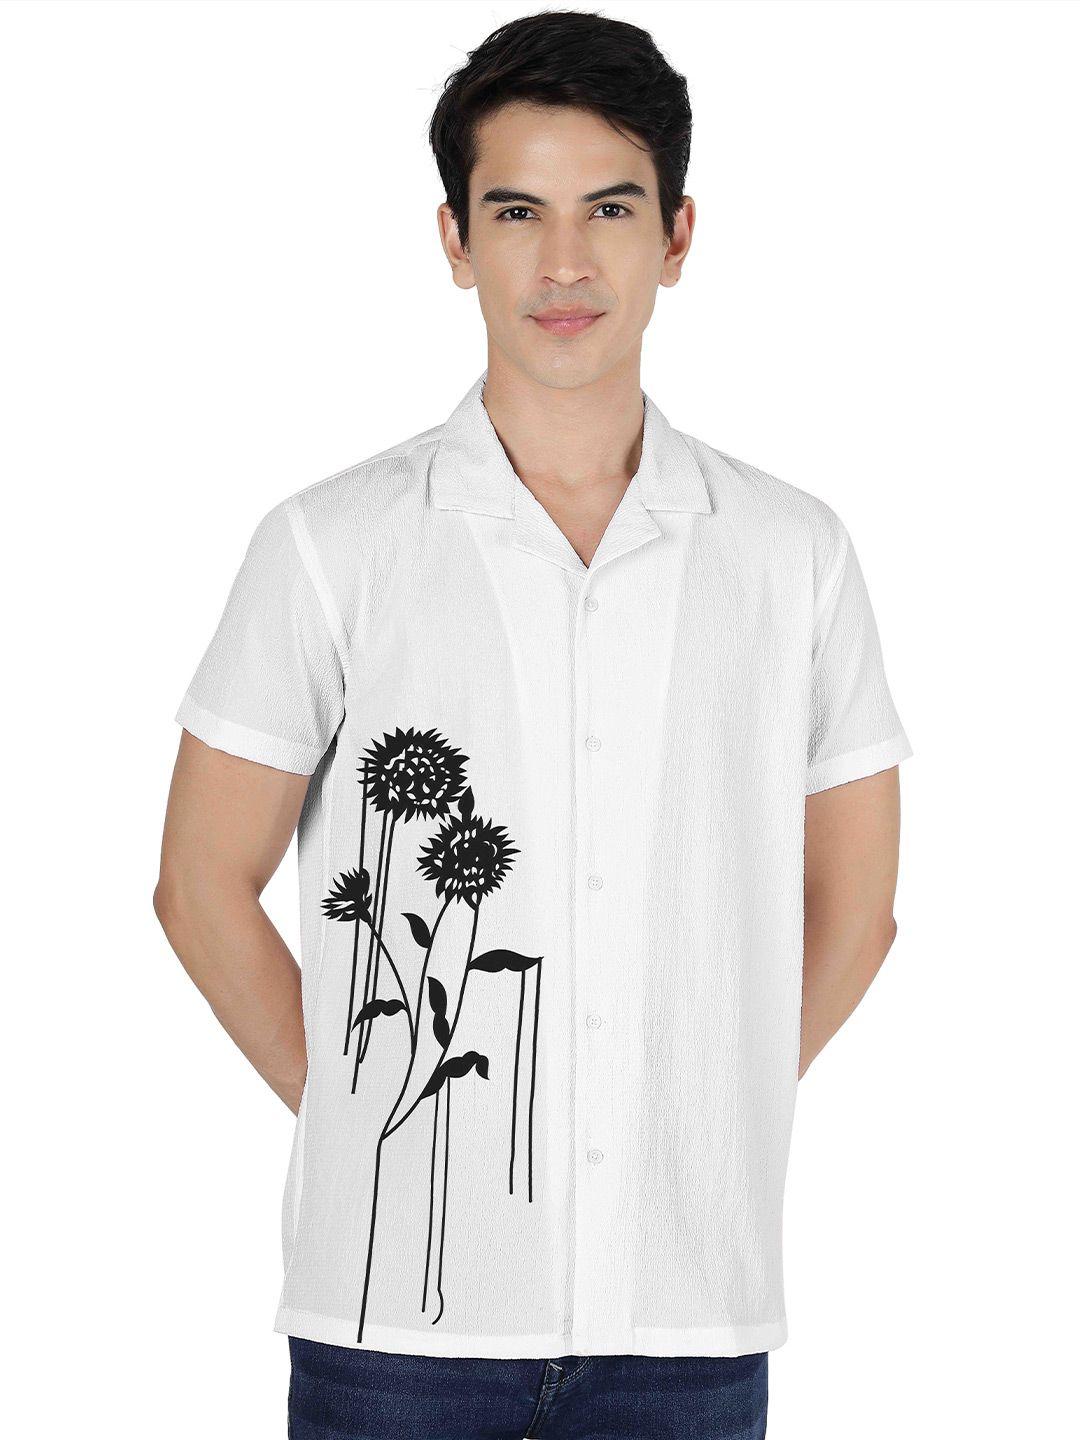 venisa premium floral printed casual shirt